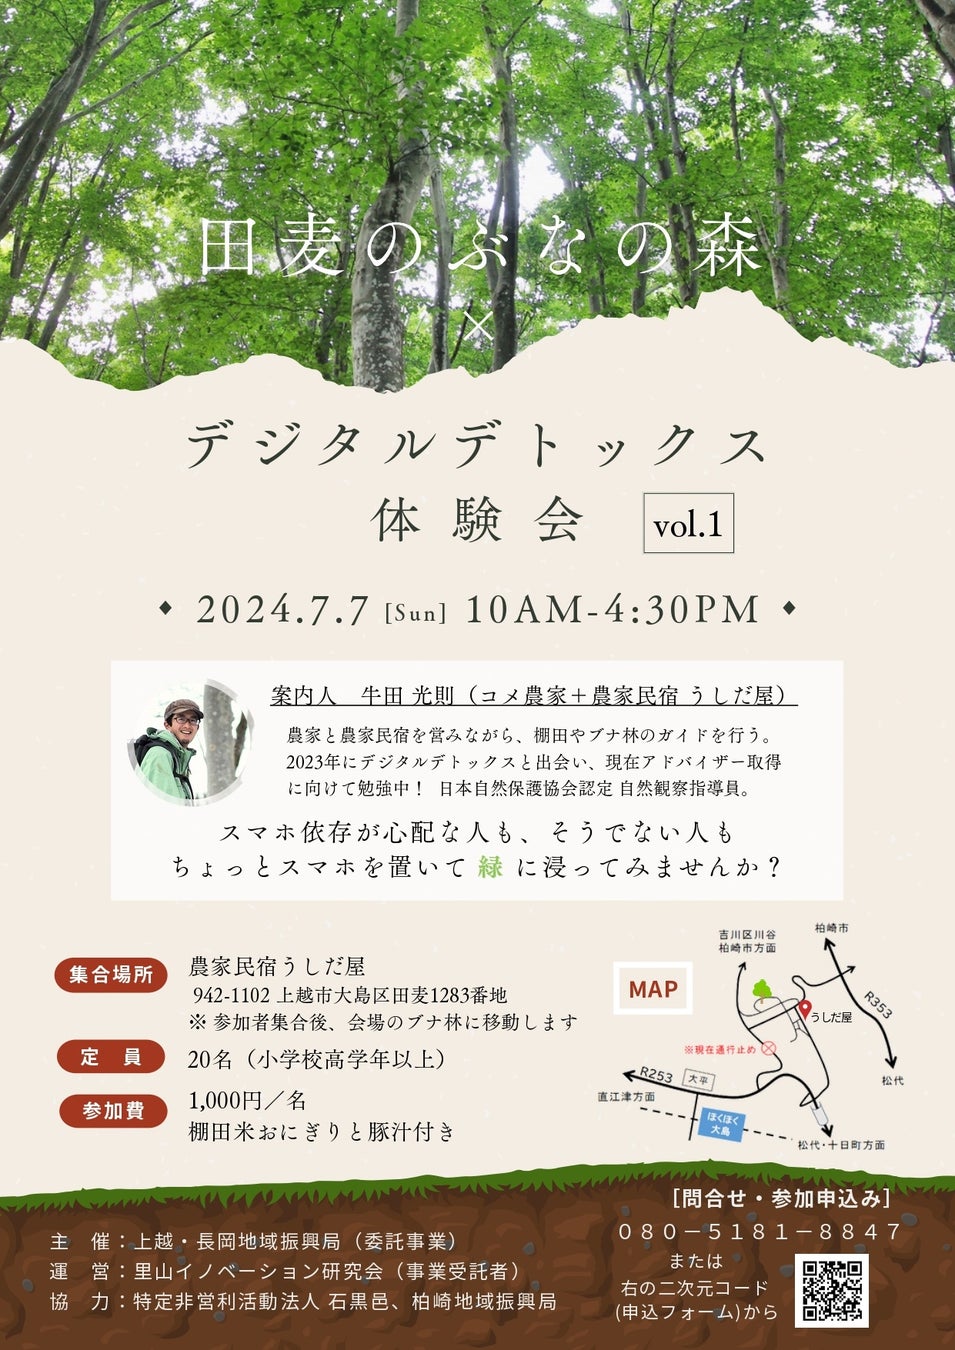 7月3日「ソフトクリームの日」限定、「神戸ポートタワー入場チケット」購入で『赤い「ソフトクリーム」』の割引クーポンがもらえるキャンペーンを実施